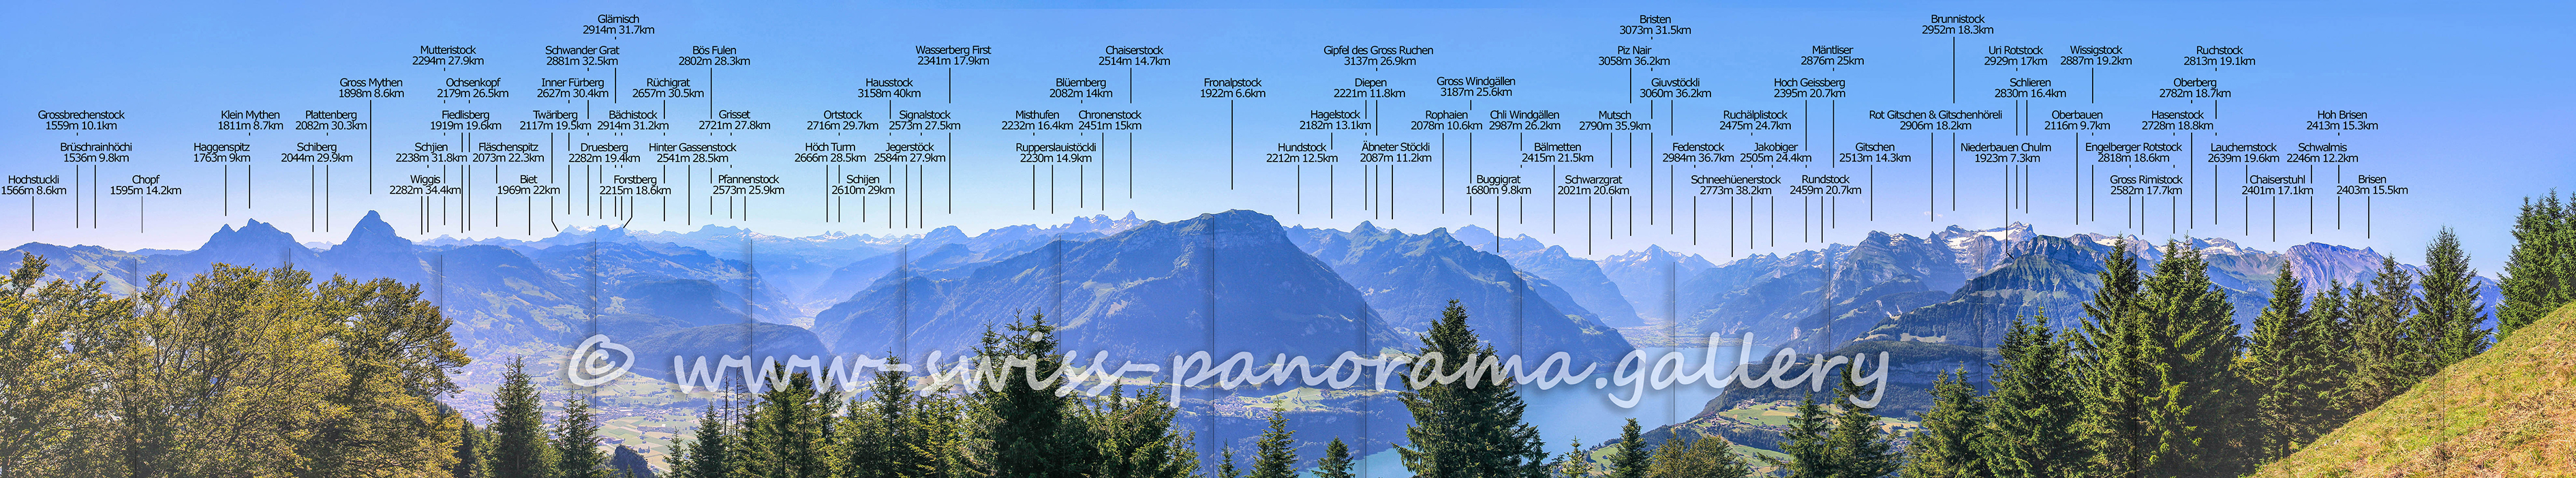 Schweizer Alpenpanorama Urmiberg Blick über den Vierwaldstättersee Switzerland panorama European Alps